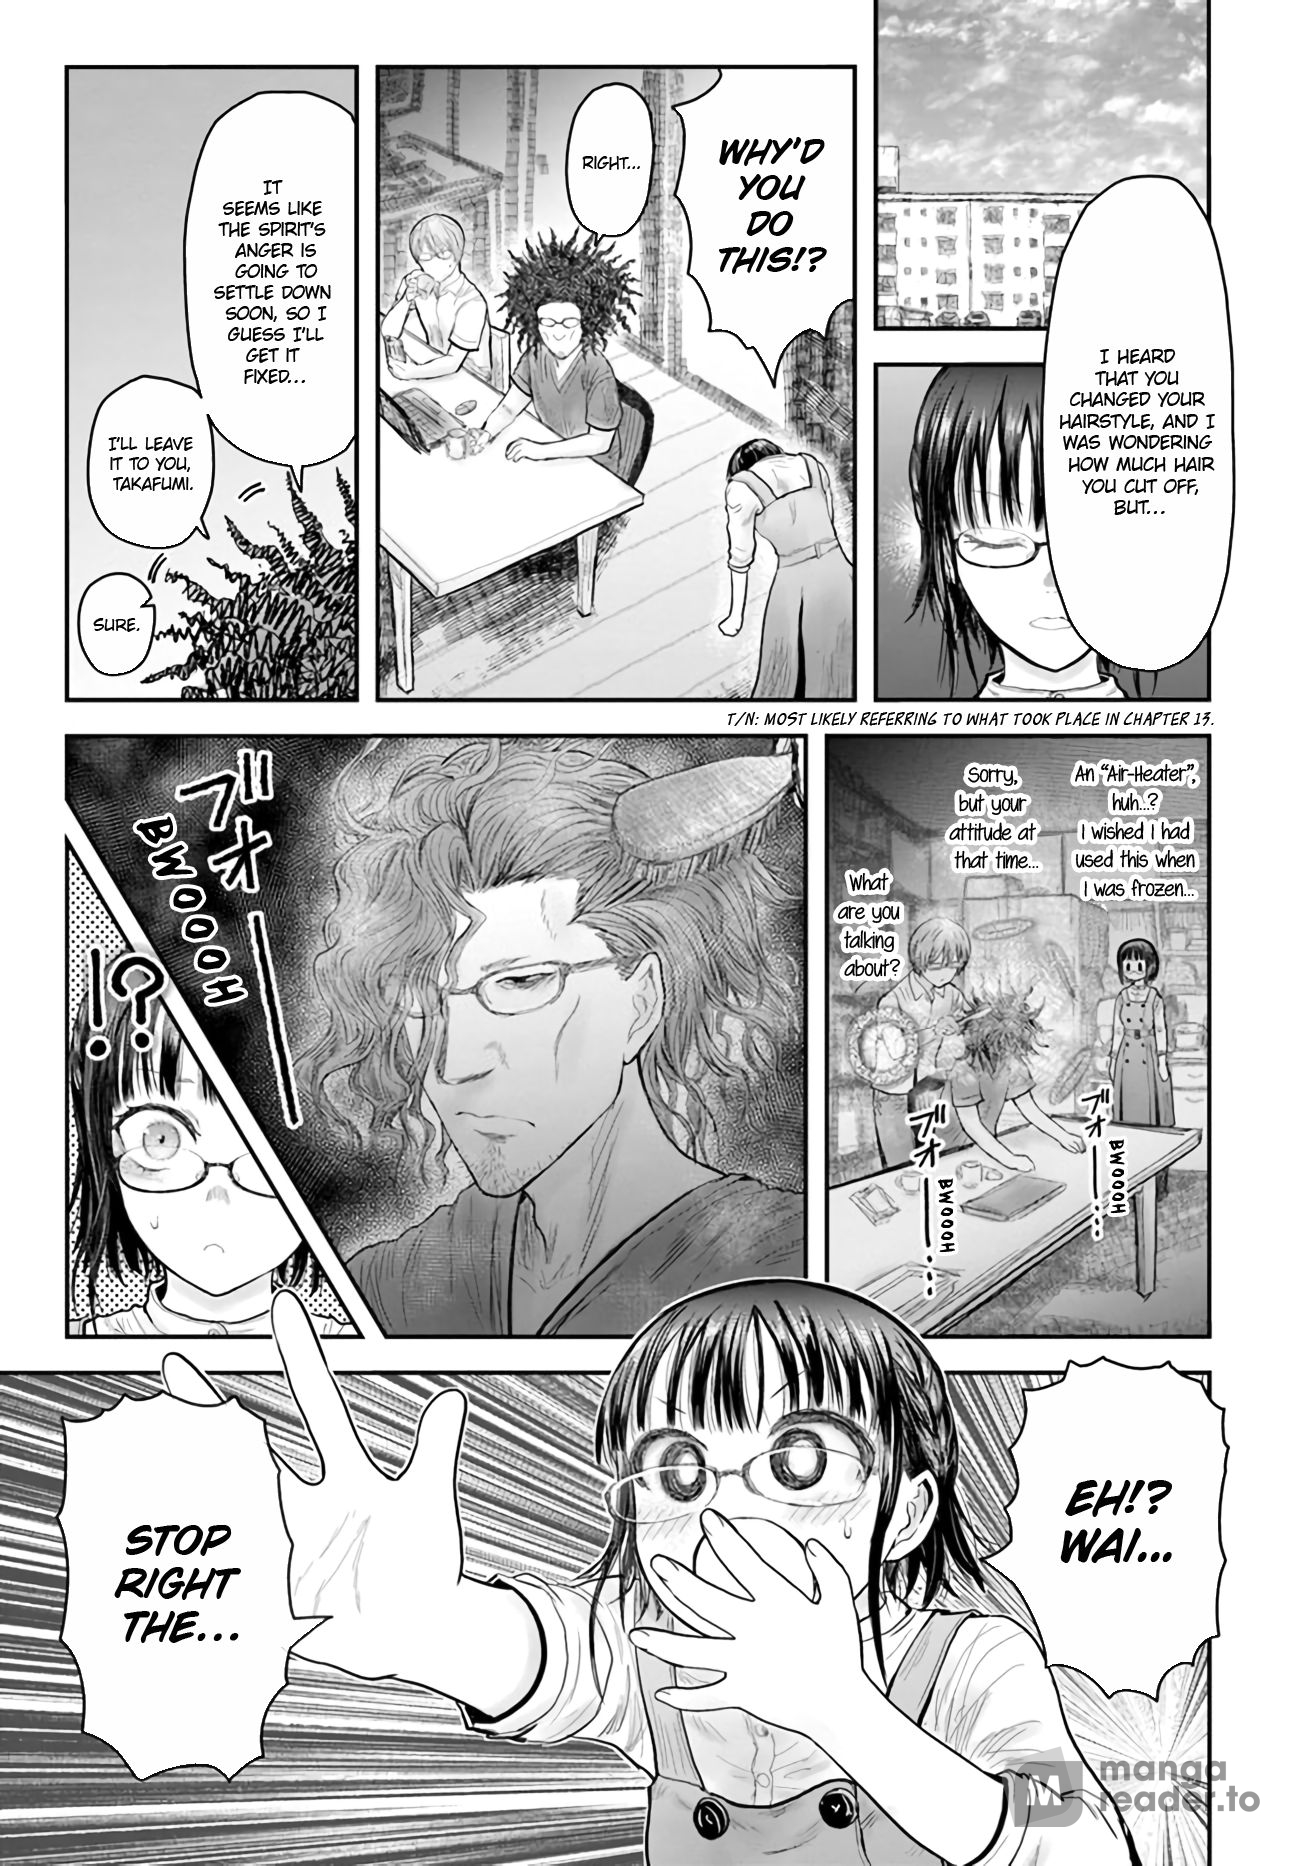 Isekai Ojisan, Chapter 48 - Isekai Ojisan Manga Online